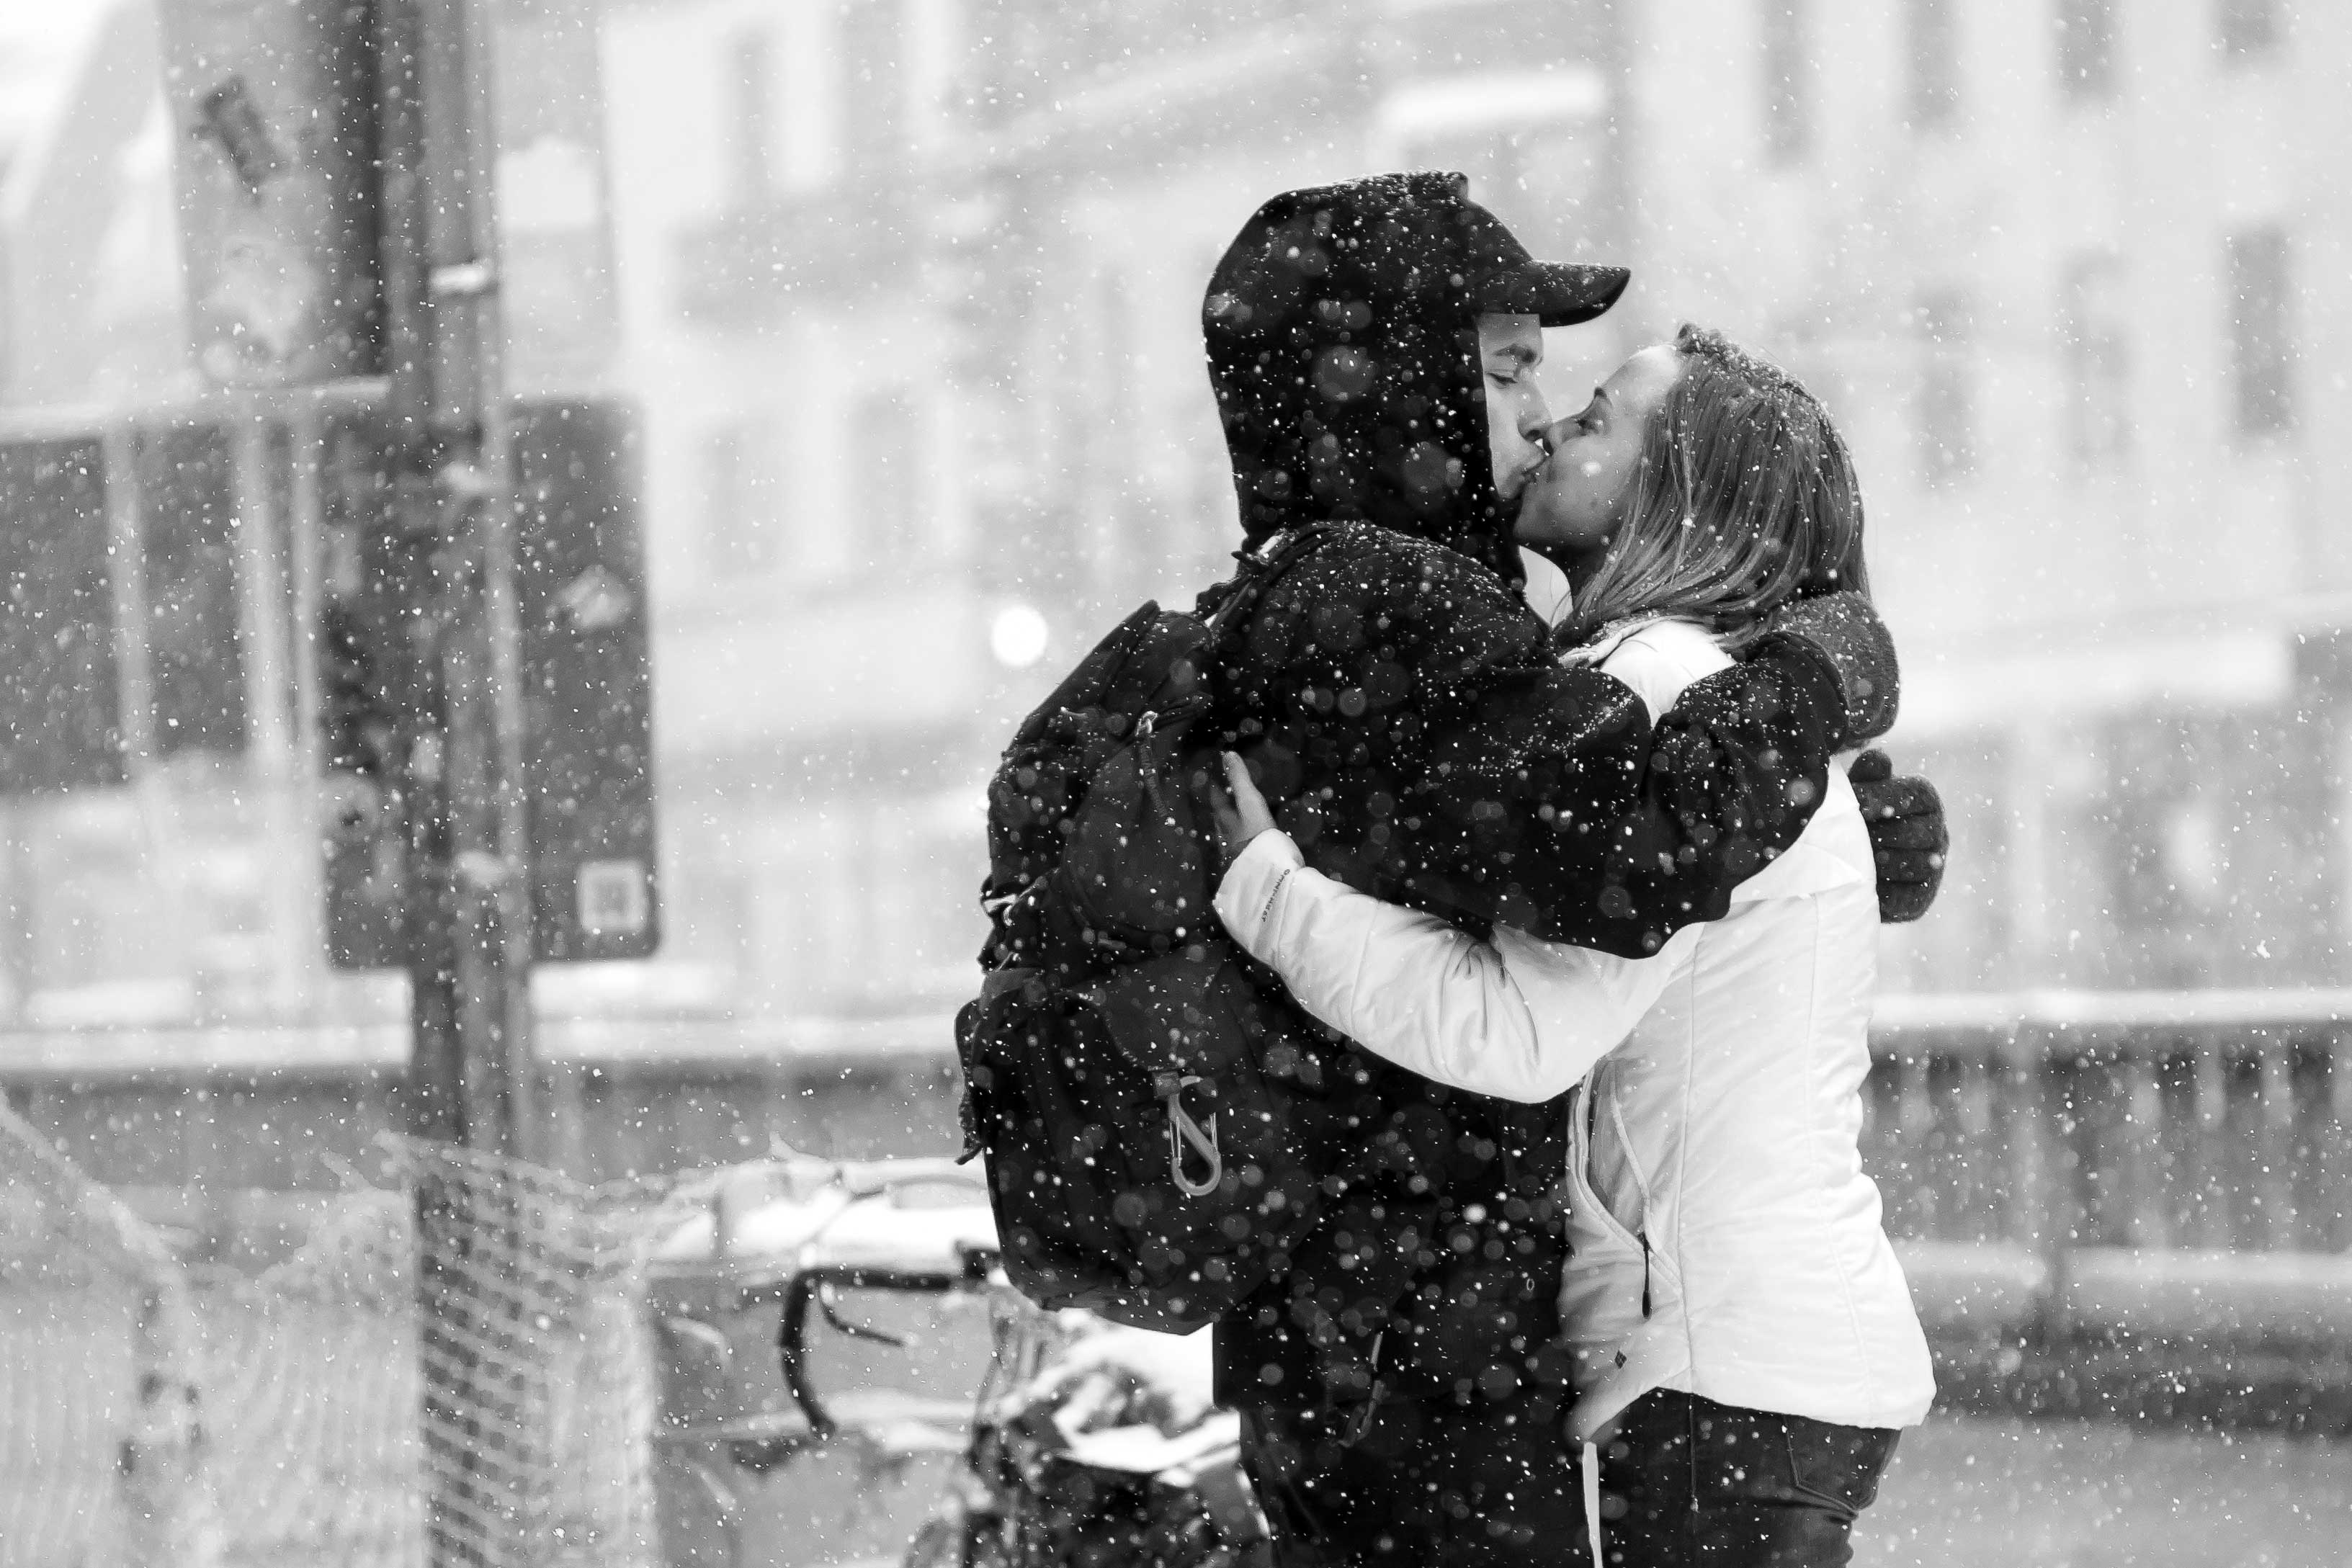 愛感の壁紙,写真,スナップショット,抱擁,黒と白,雪